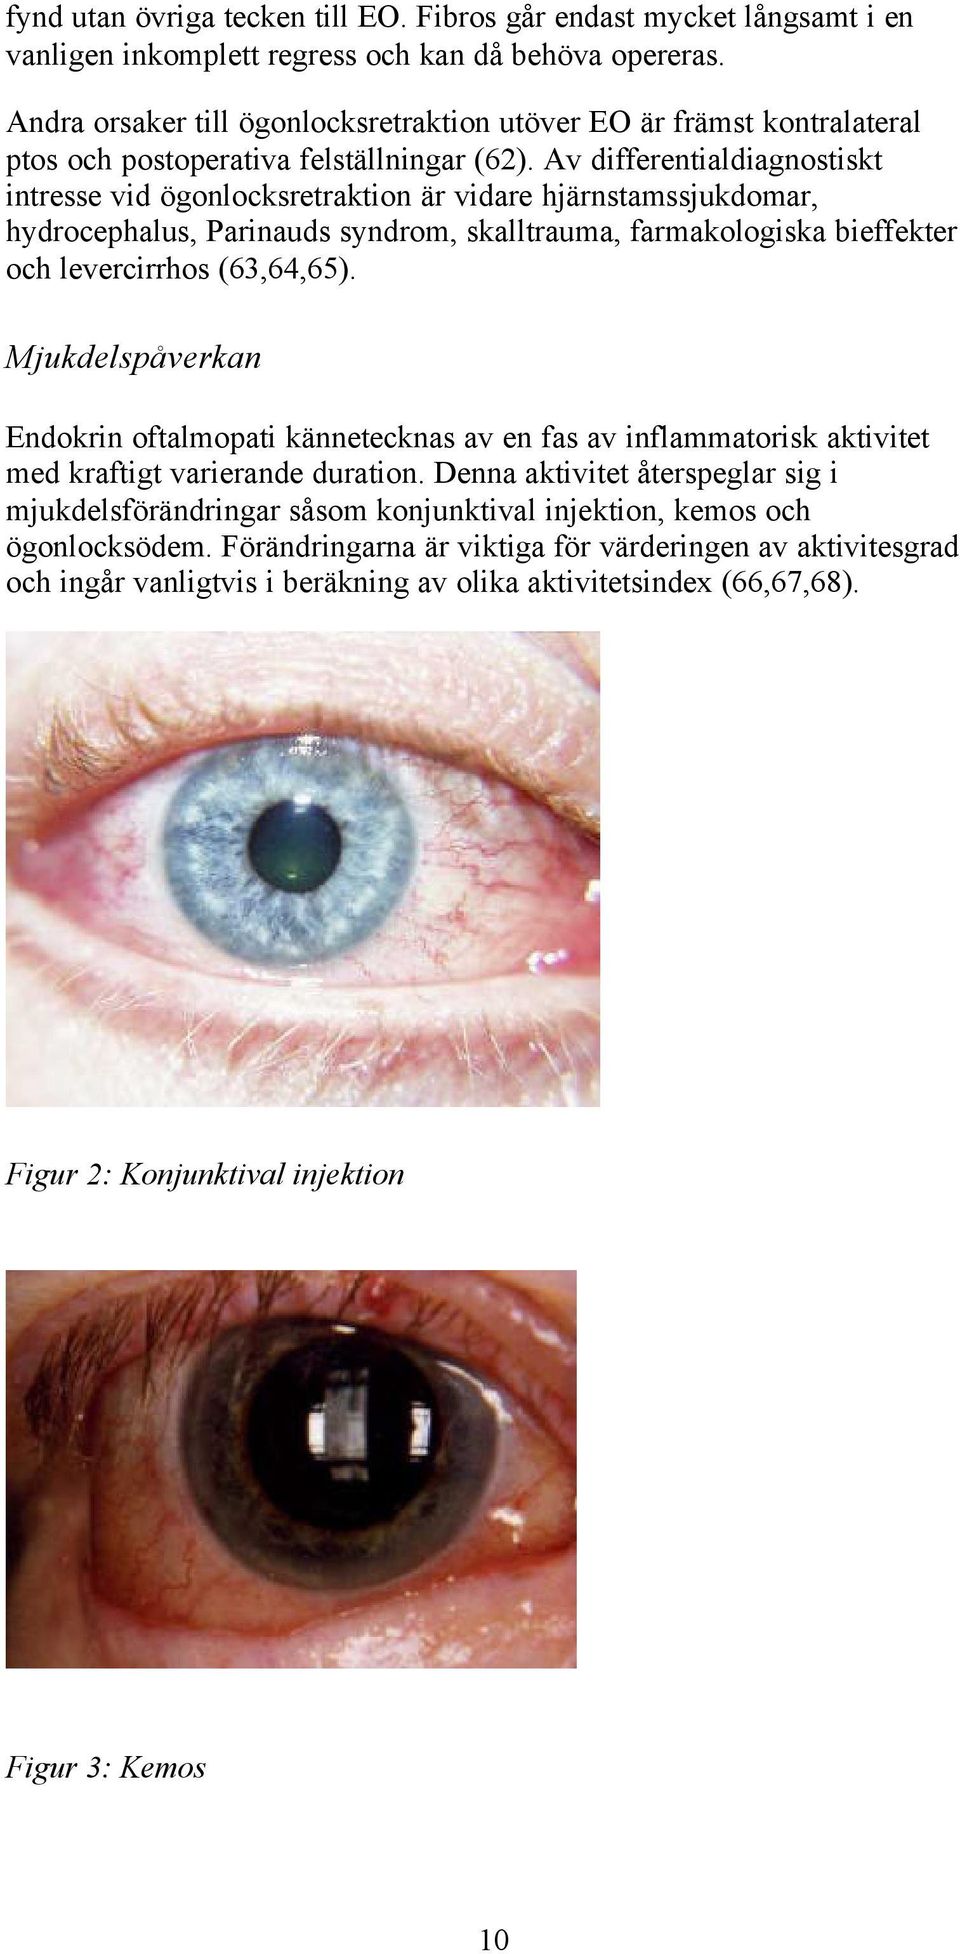 Av differentialdiagnostiskt intresse vid ögonlocksretraktion är vidare hjärnstamssjukdomar, hydrocephalus, Parinauds syndrom, skalltrauma, farmakologiska bieffekter och levercirrhos (63,64,65).